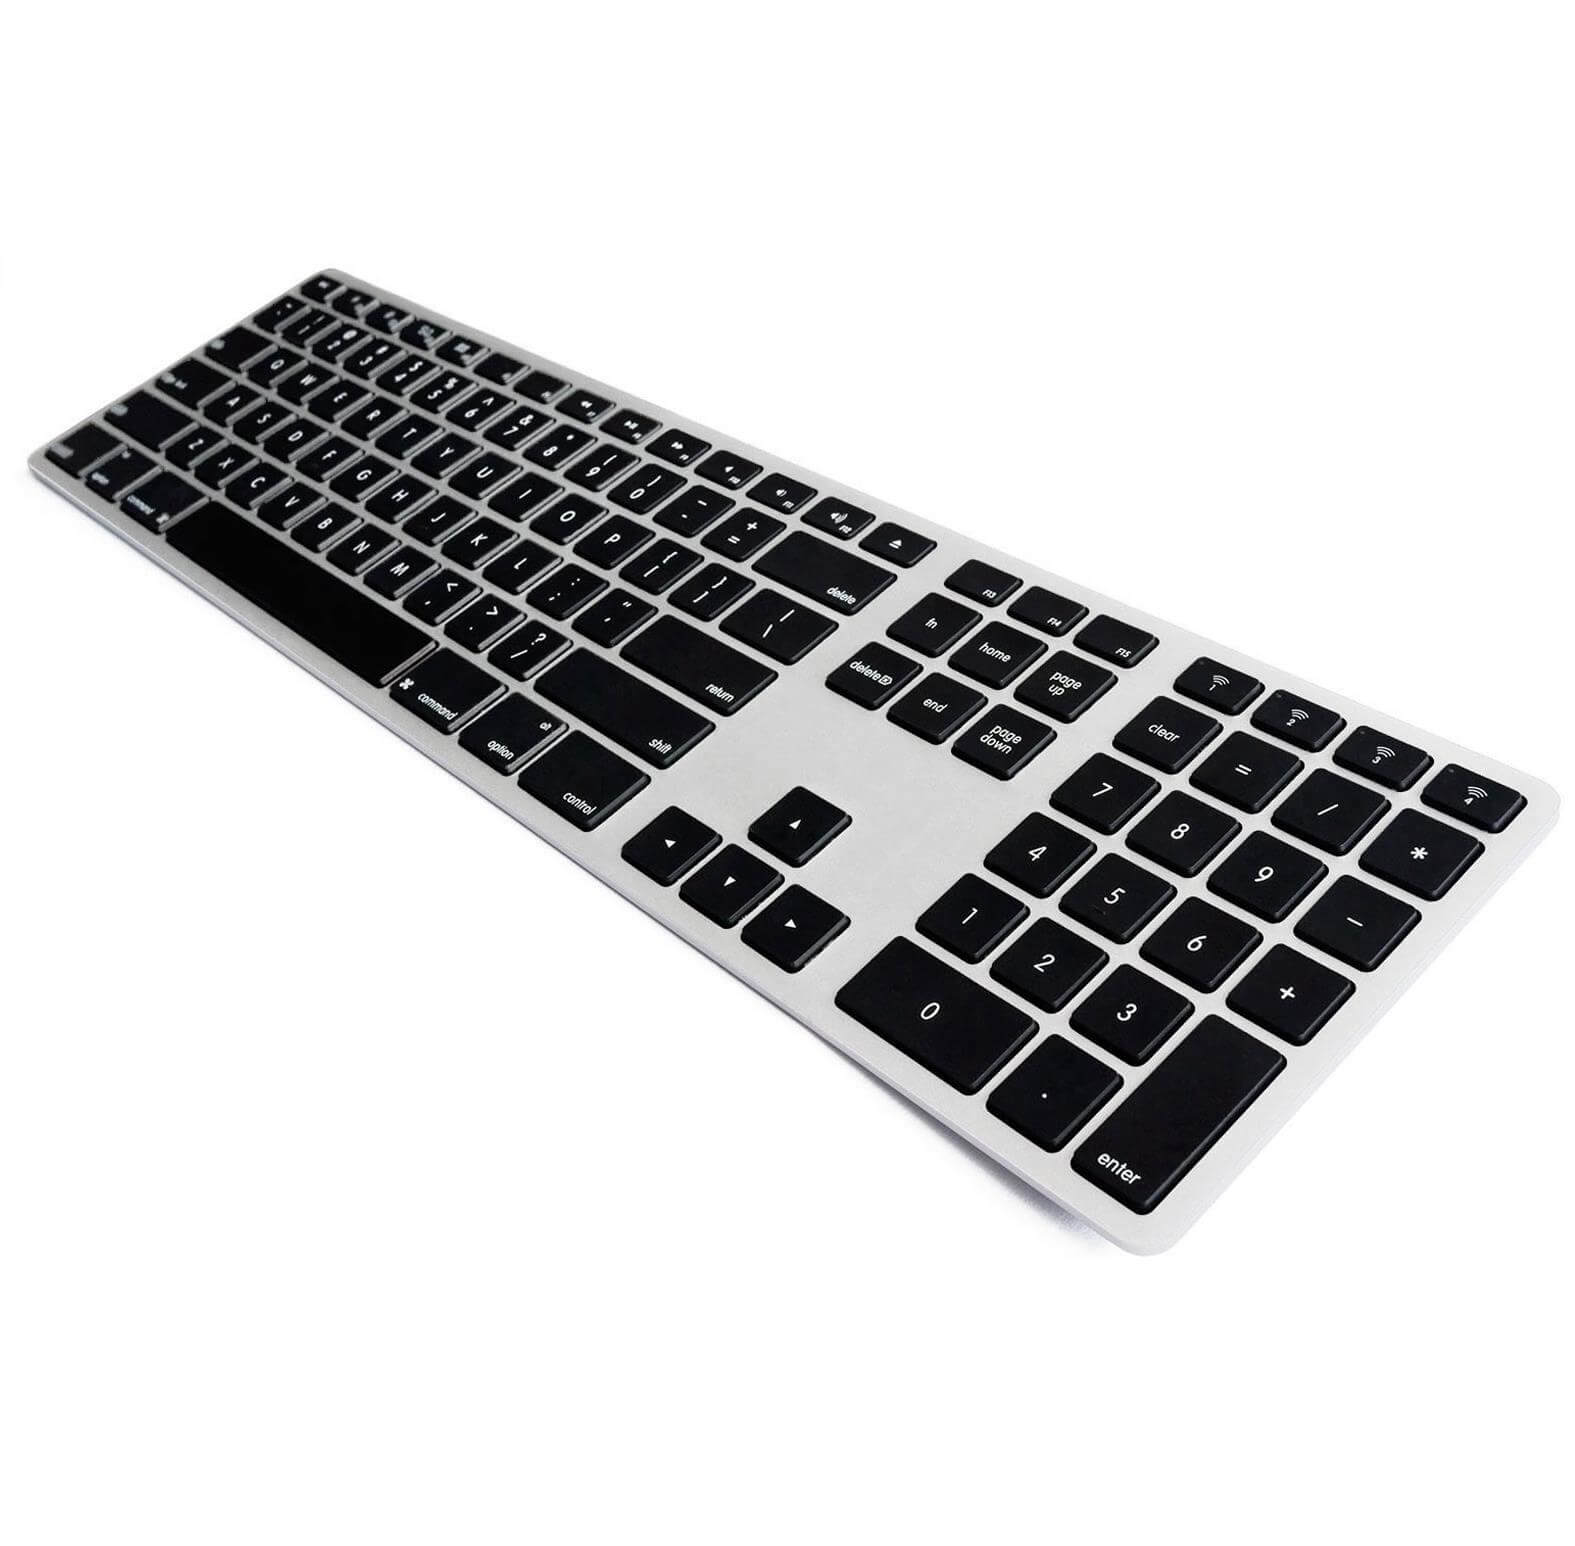 Matias Backlit Wireless Aluminum Keyboard with Numeric Keypad - качествена алуминиева безжична клавиатура с подсветка (черен-сребрист) 